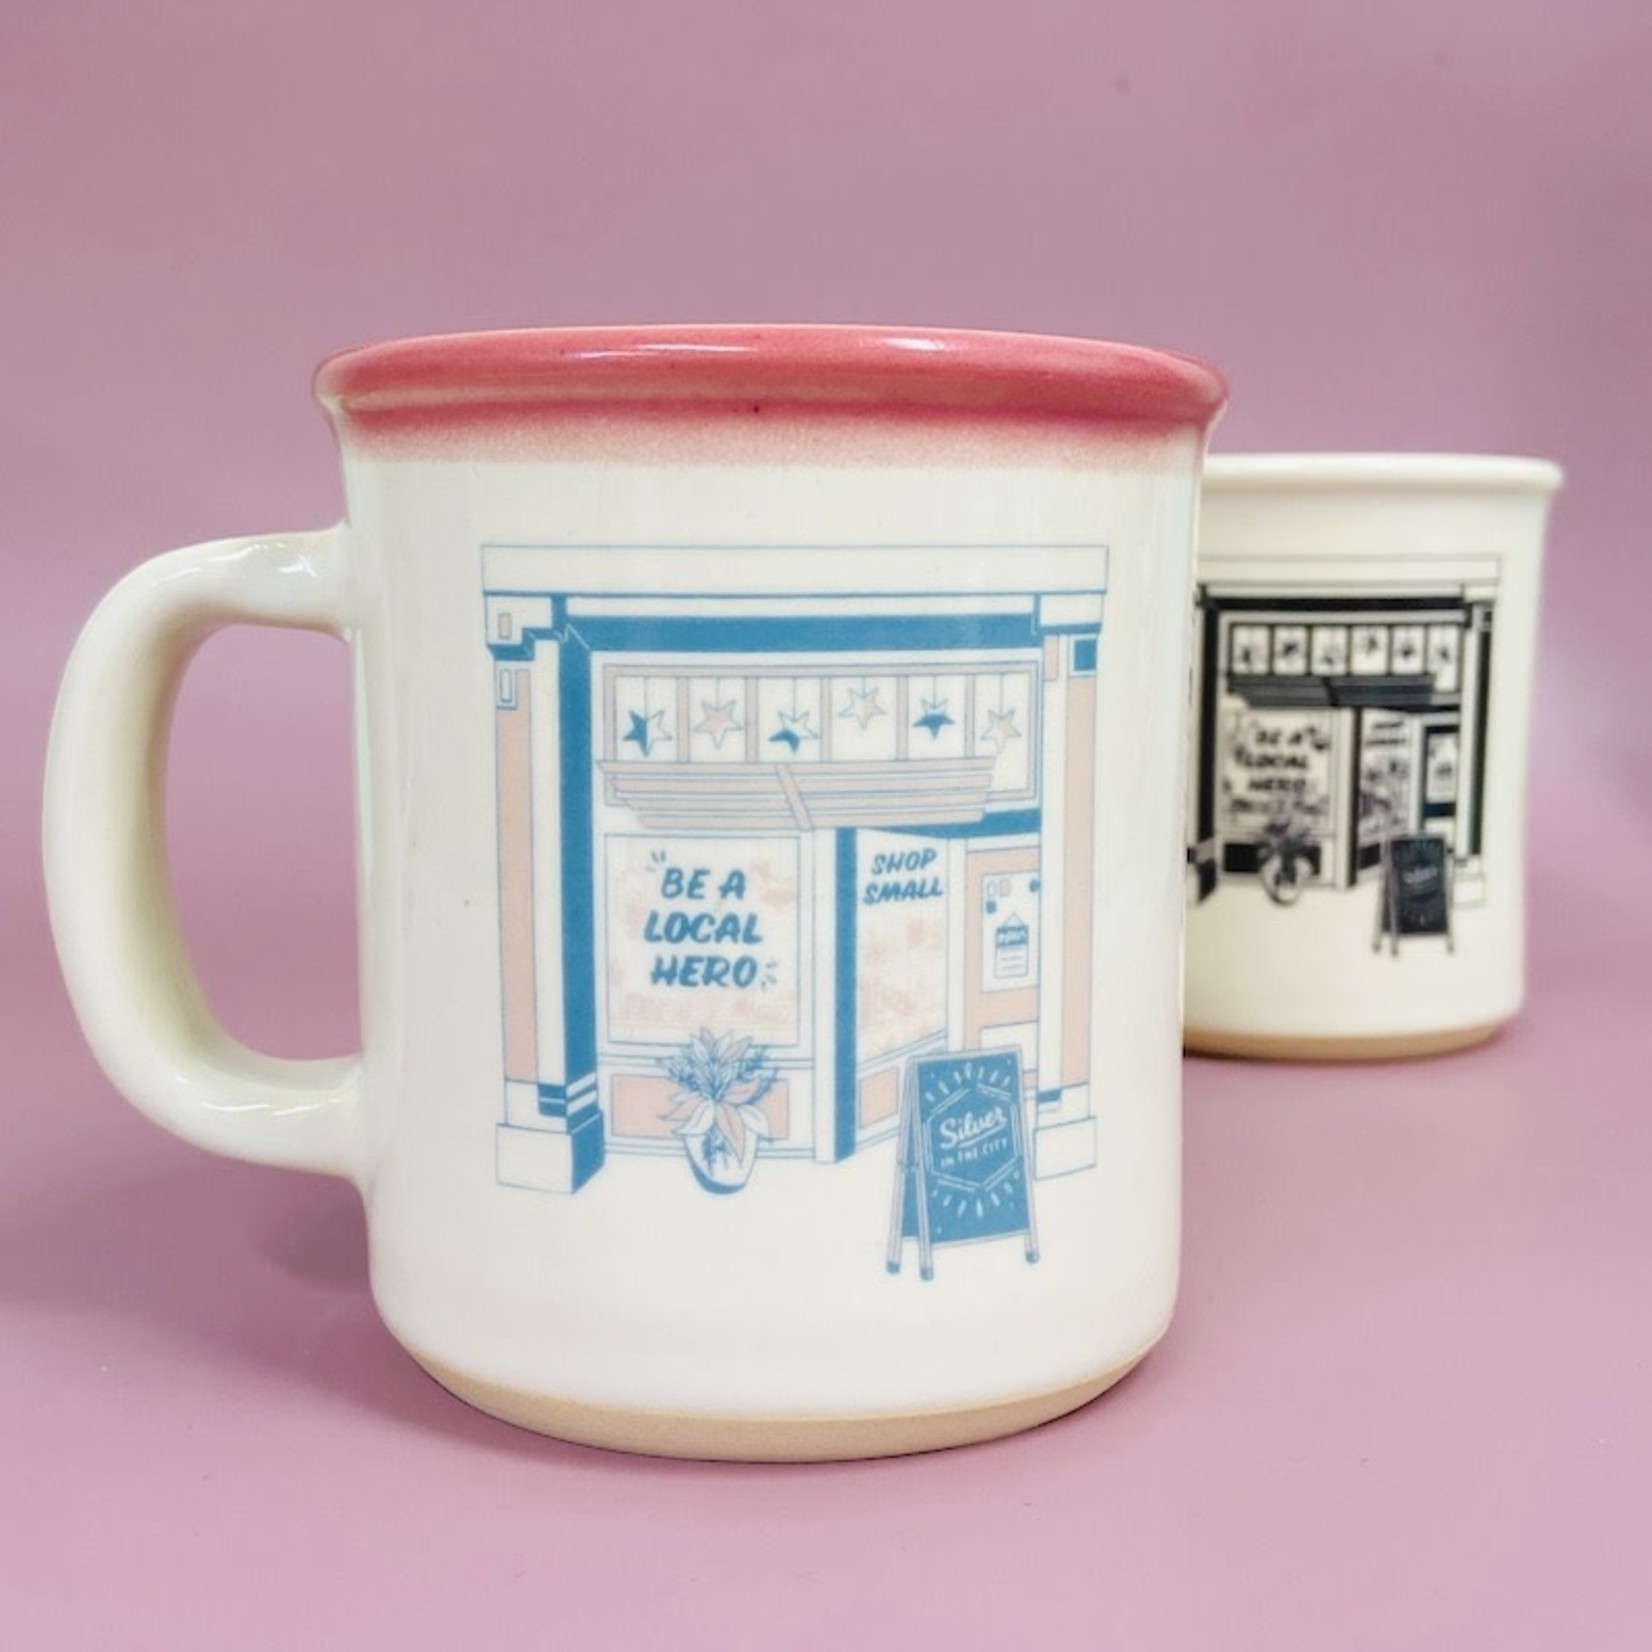 SITC + Mudlove Shop Small Mug